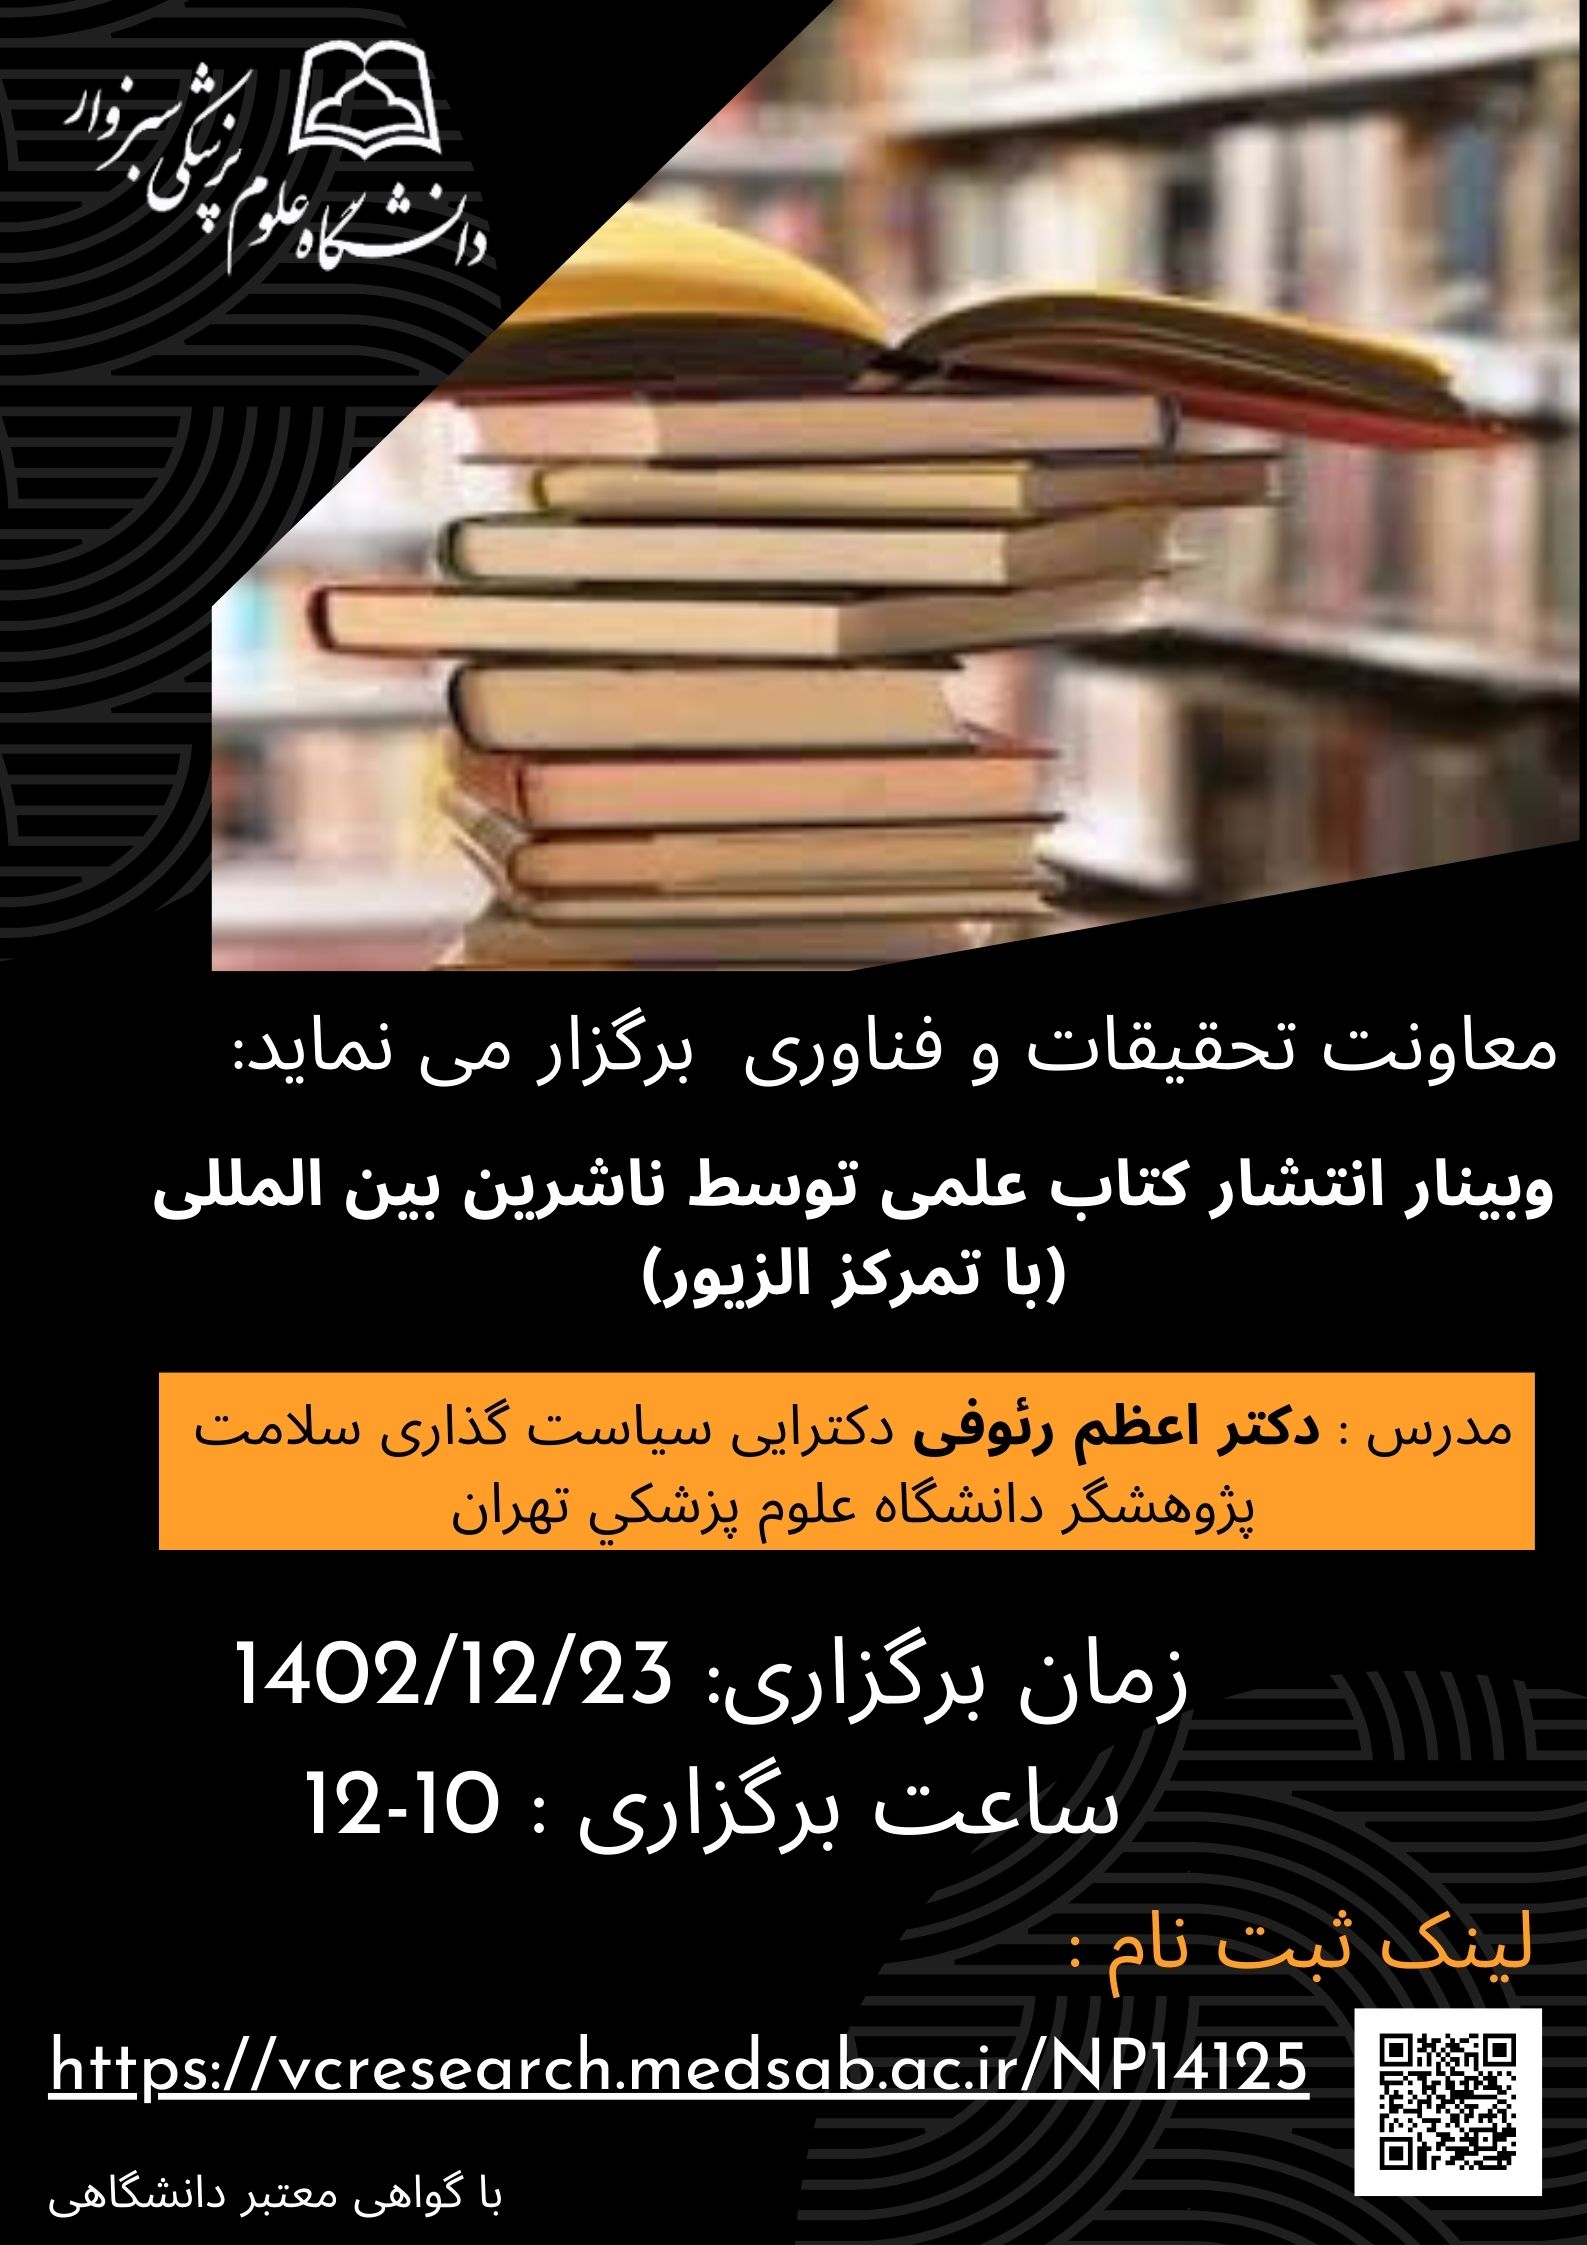 وبینار : انتشار كتاب علمي توسط ناشرين بين المللي (با تمركز الزيور)